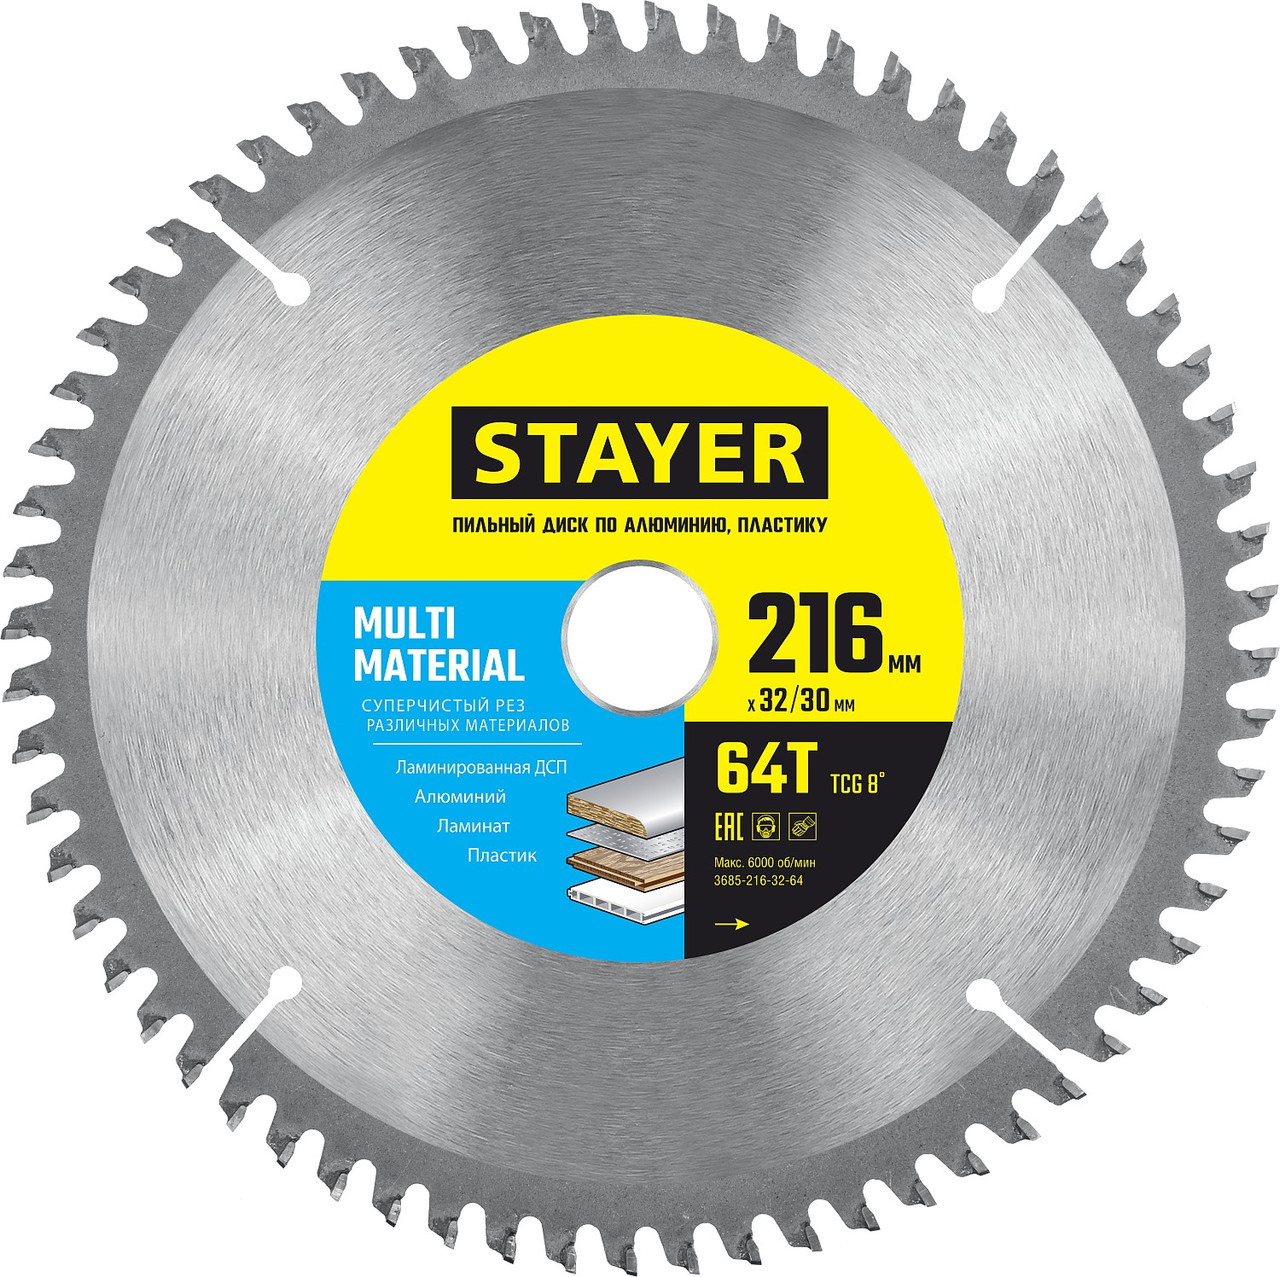 STAYER MULTI MATERIAL 32/30мм 64Т, диск пильный по алюминию, супер чистый рез 216